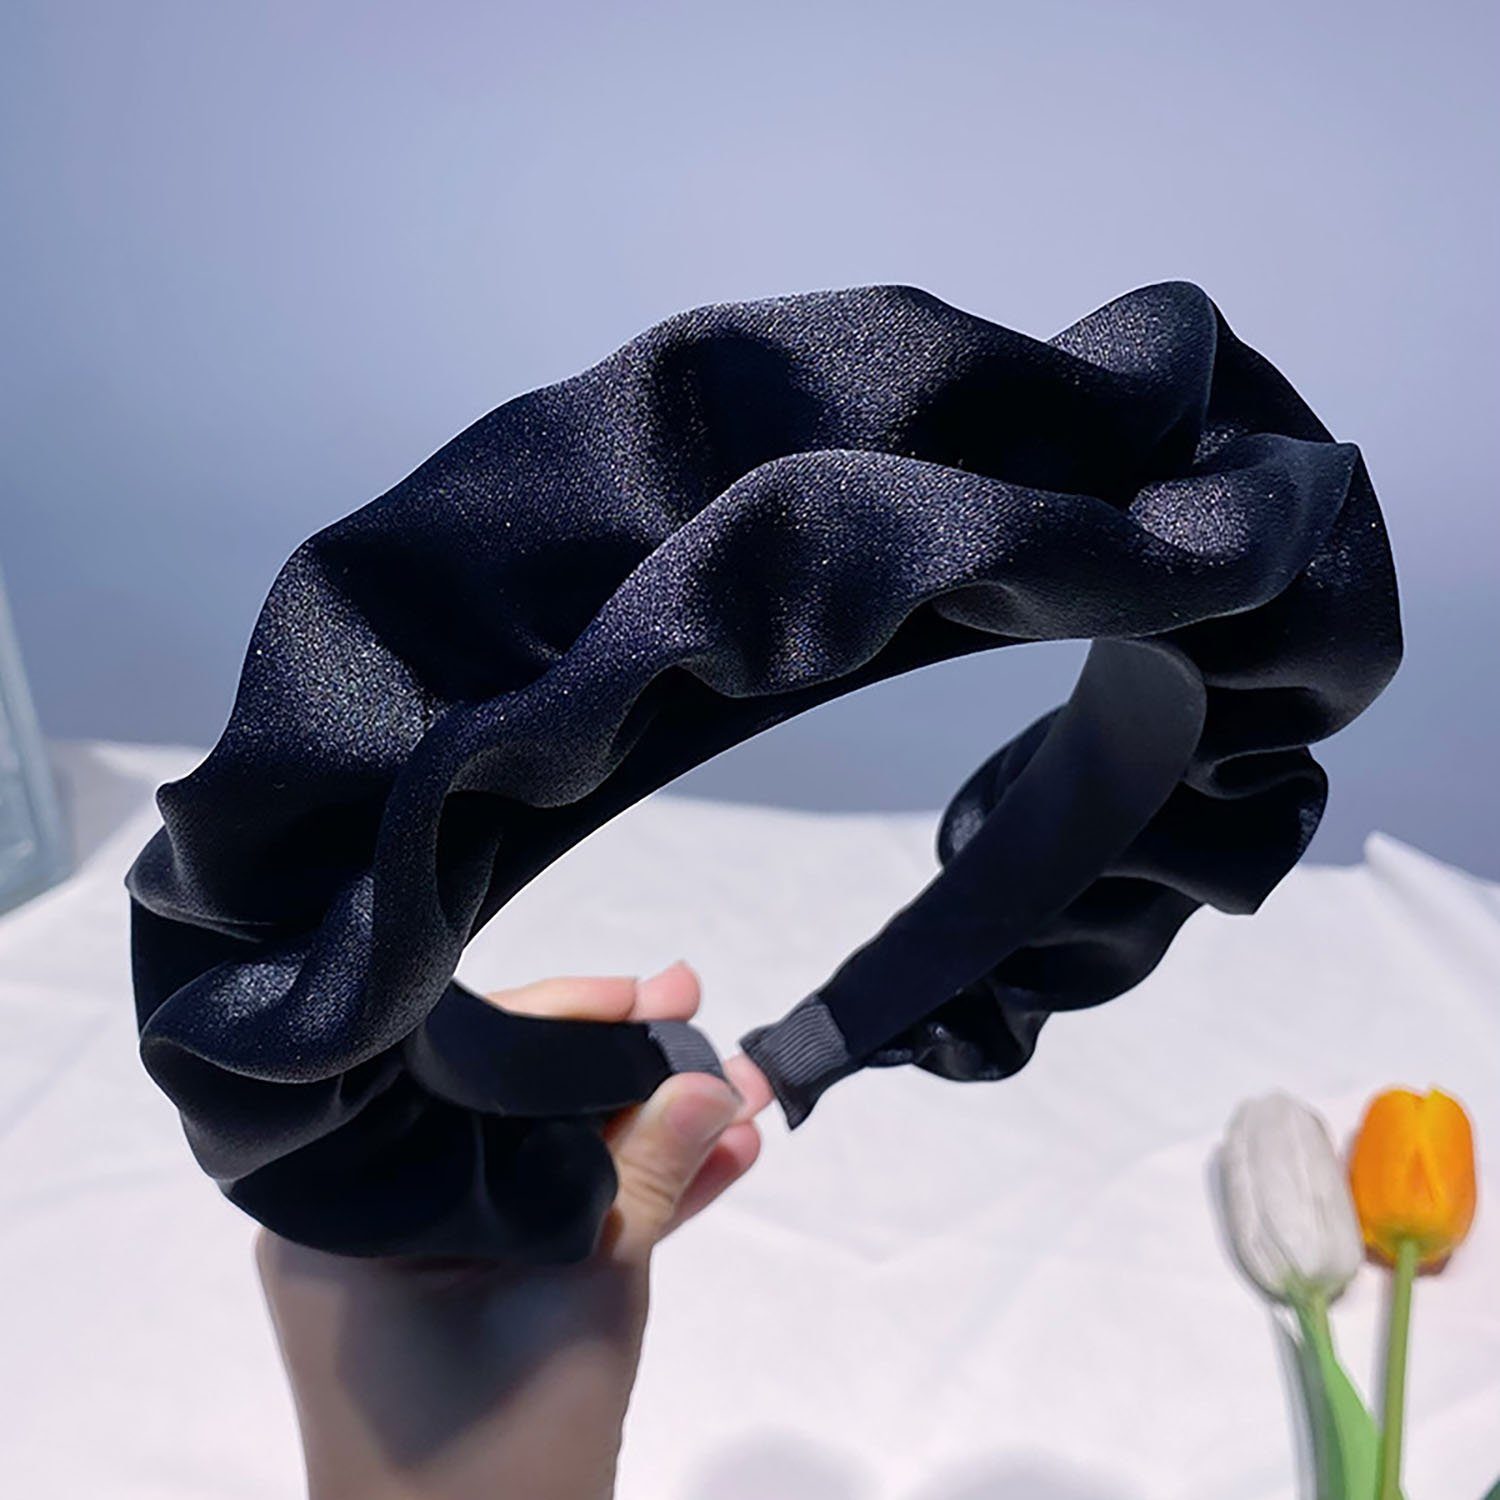 yozhiqu Haarband Gefaltetes Stirnband für Frauen, Sommer Gesicht waschen spezielle, rutschfeste hohe Stirnband Haarnadel, Verschiedene Farben verfügbar